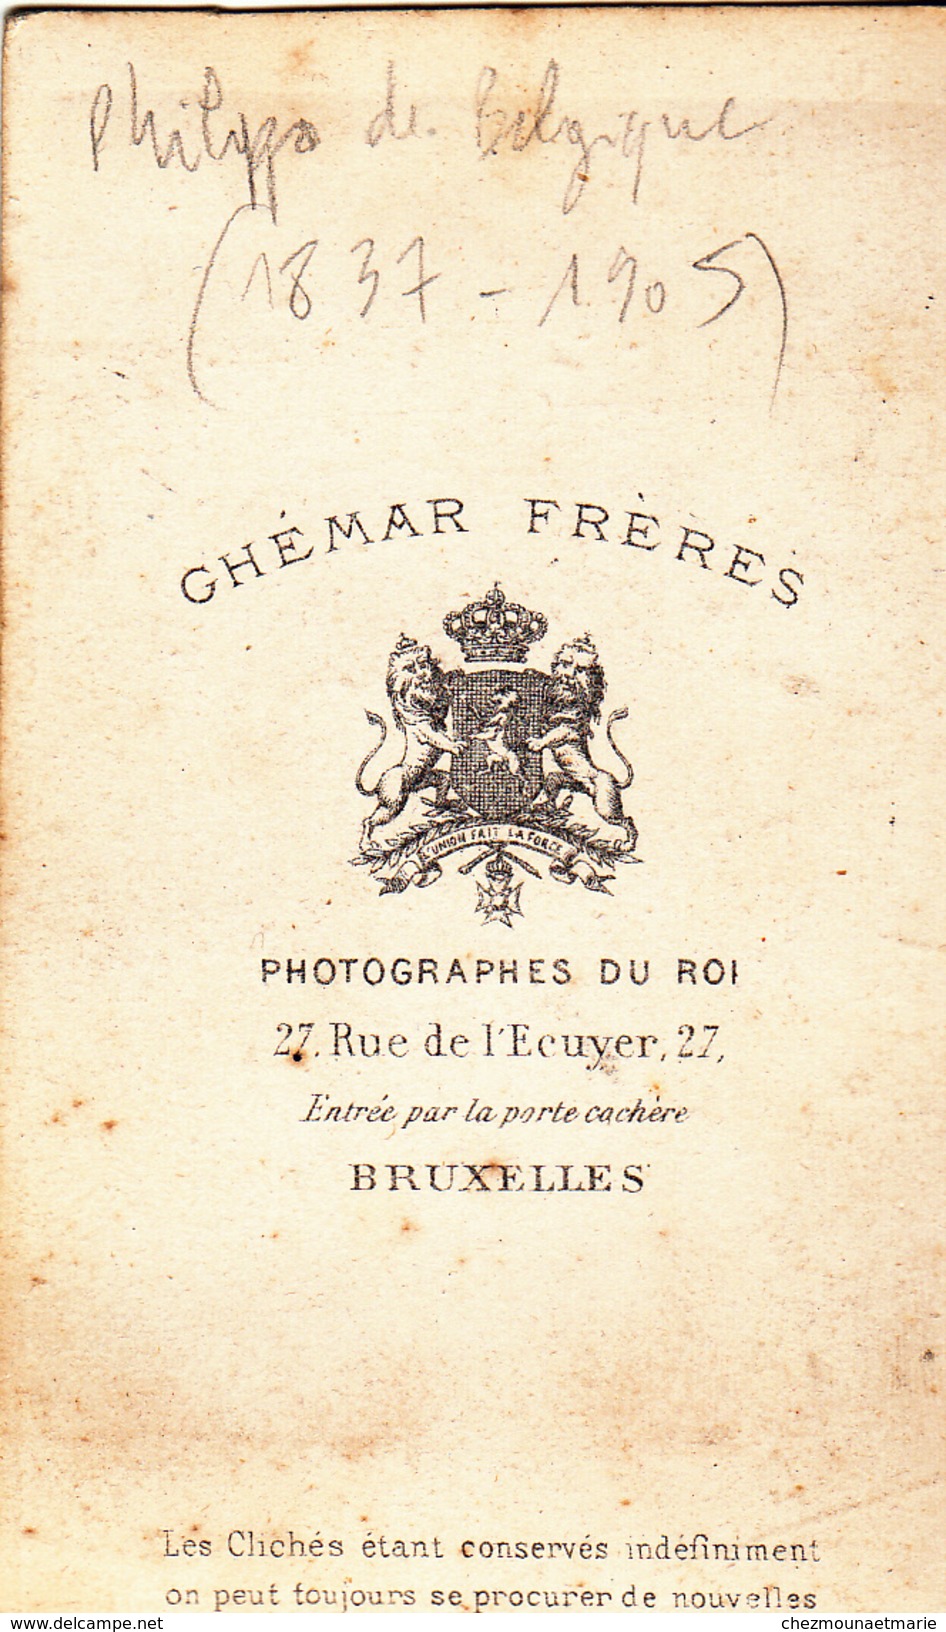 PHILIPPE DE BELGIQUE (1869-1905) PRINCE HERITIER - COMTE DE FLANDRE - GHEMAR BRUXELLES - CDV PHOTO - Célébrités